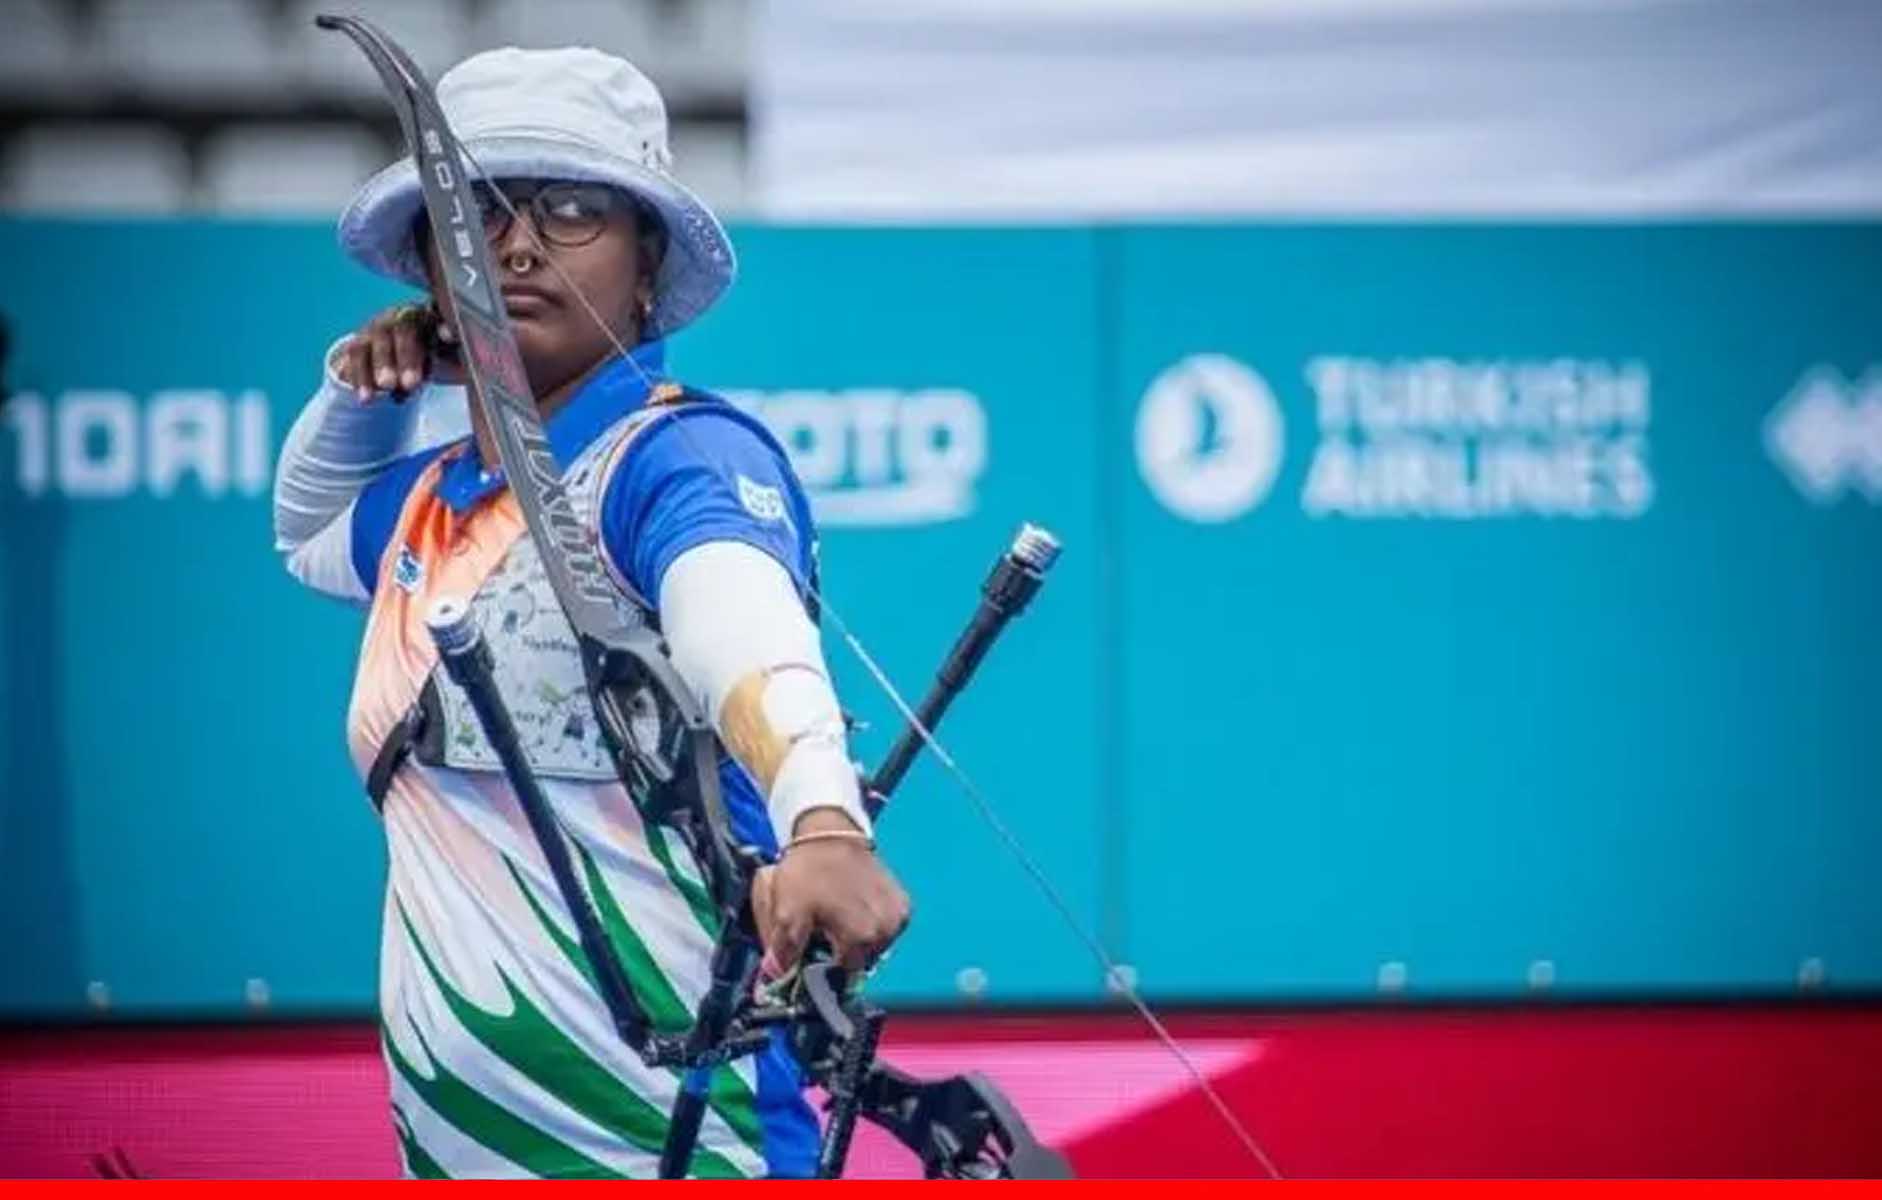 दीपिका कुमारी ने रैंकिंग राउंड में हासिल किया 9वां स्थान, कोरिया की सान ने बनाया ओलिंपिक रिकॉर्ड